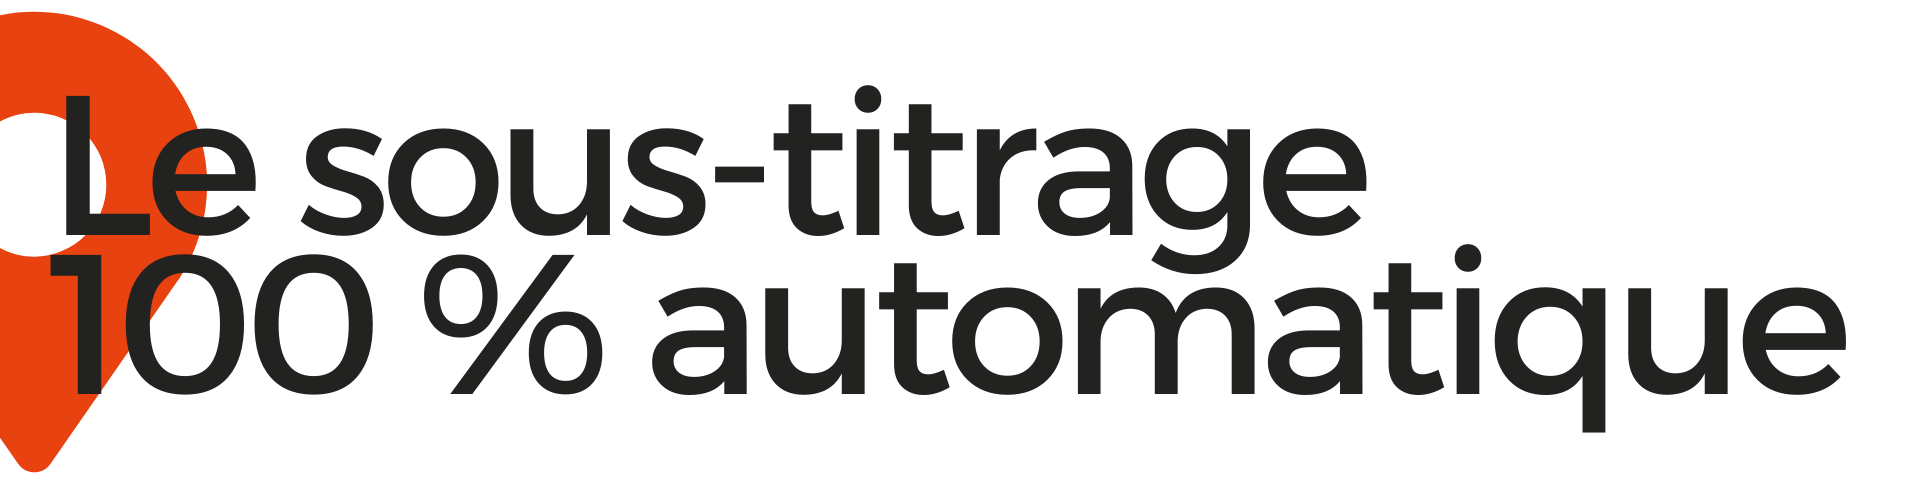 le sous-titrage 100 % automatique traduction vidéo EuropaTrad